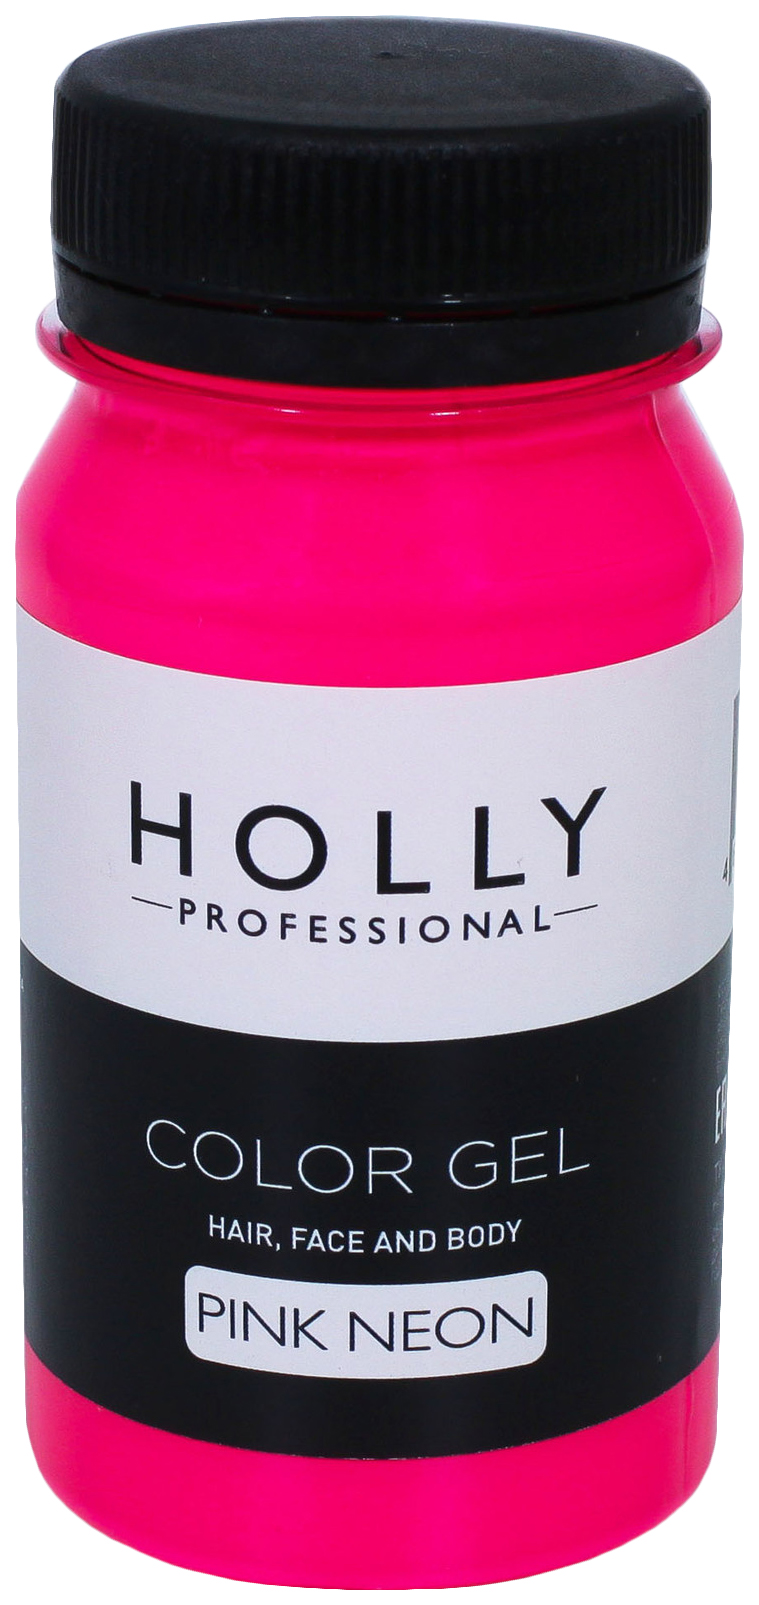 Купить Декоративный гель для волос, лица и тела Holly Professional, Pink Neon, 100 мл 7138969